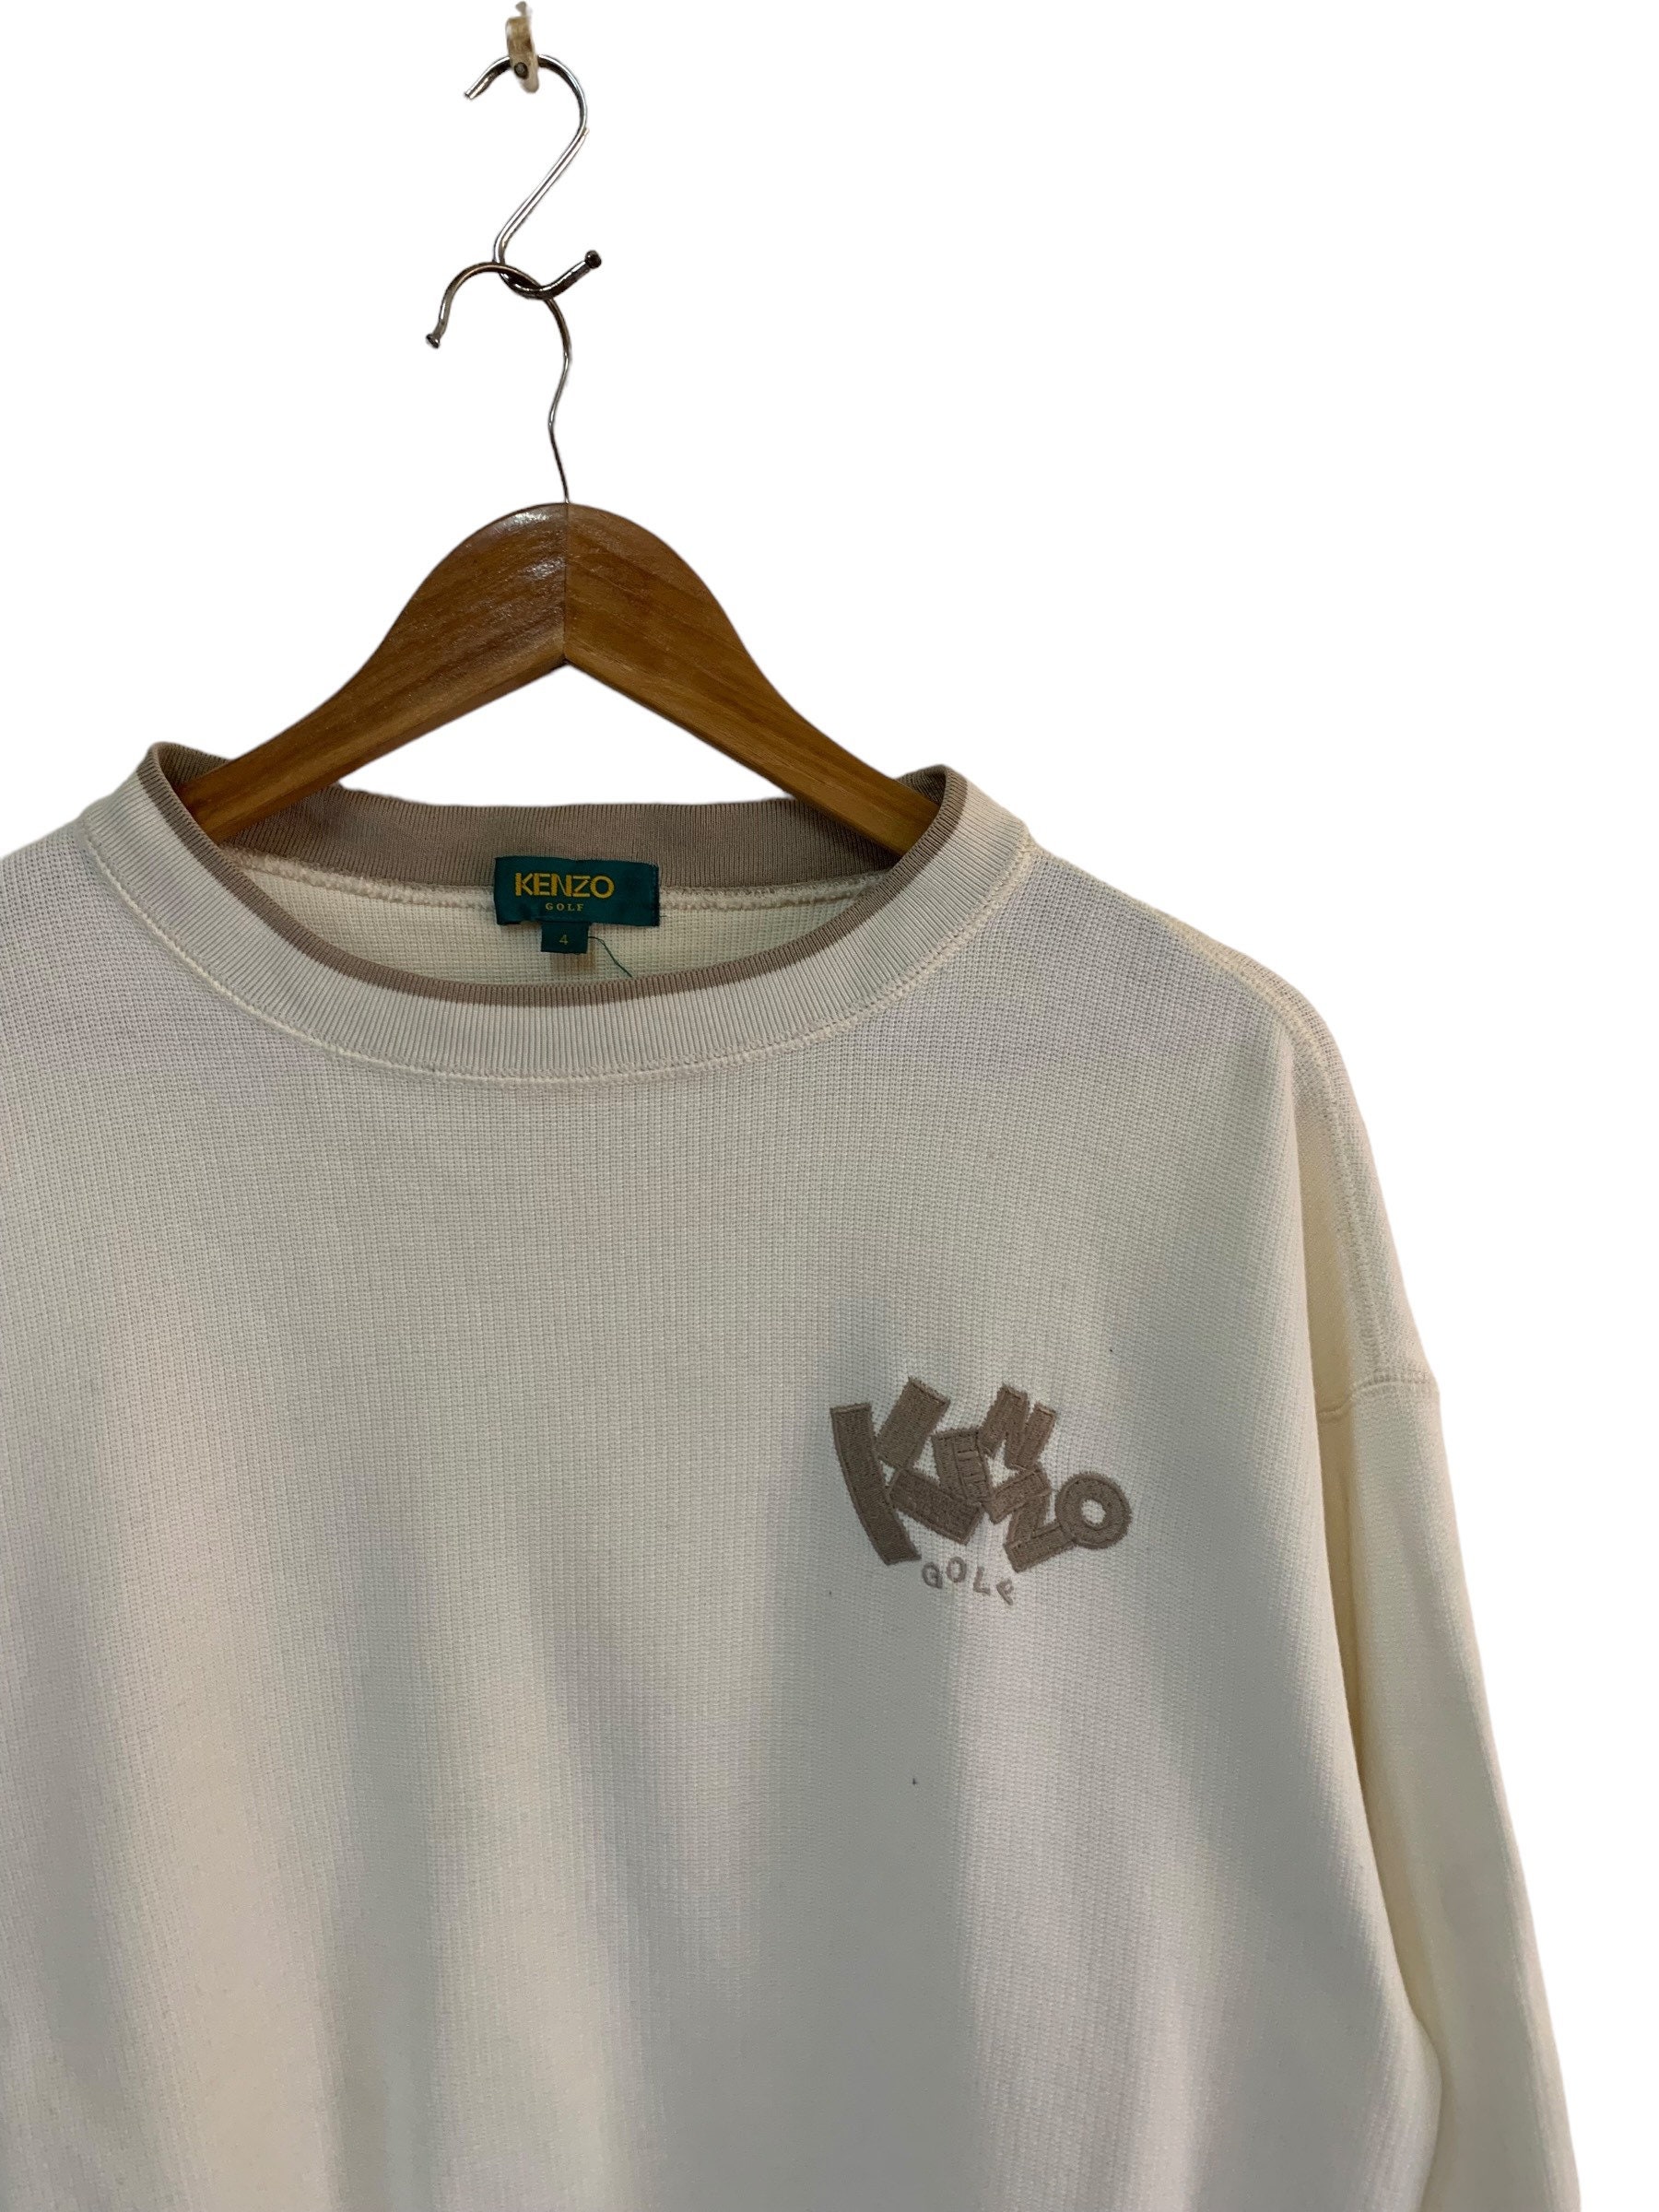 Smeren ader Transistor Vintage Kenzo Golf Sweatshirt Small Logo Jumper Pullover - Etsy